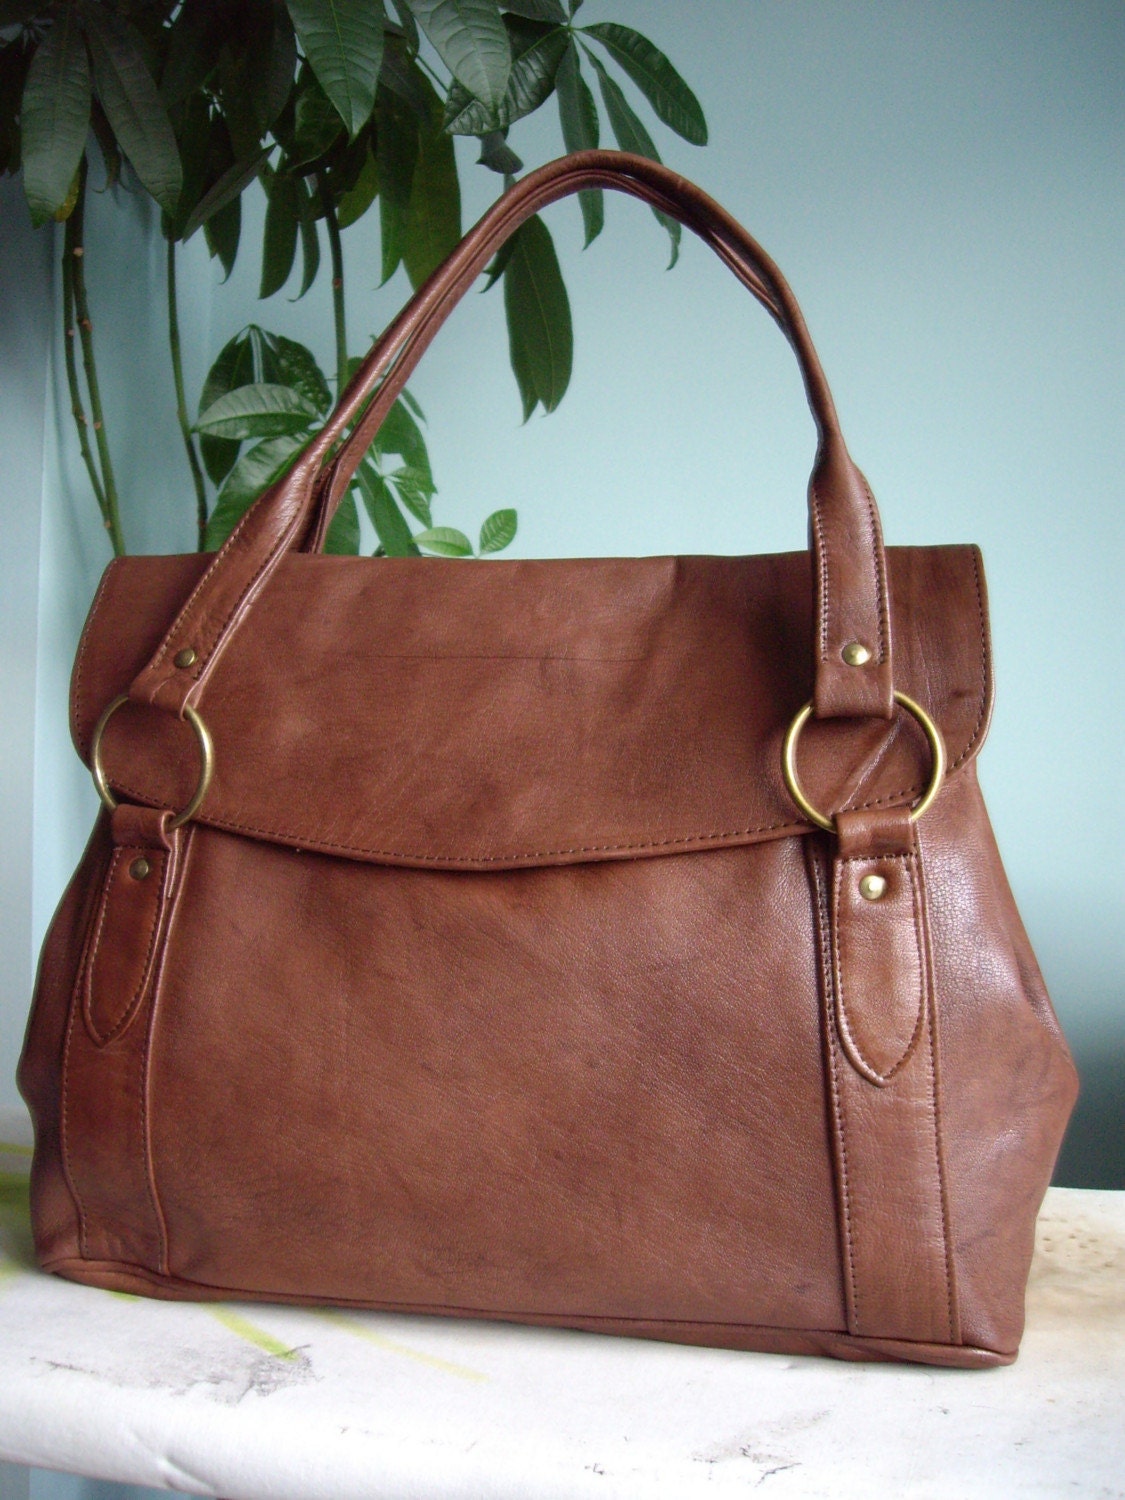 New Large Brown Leather Tote Shopper Shoulder Handbag Bag